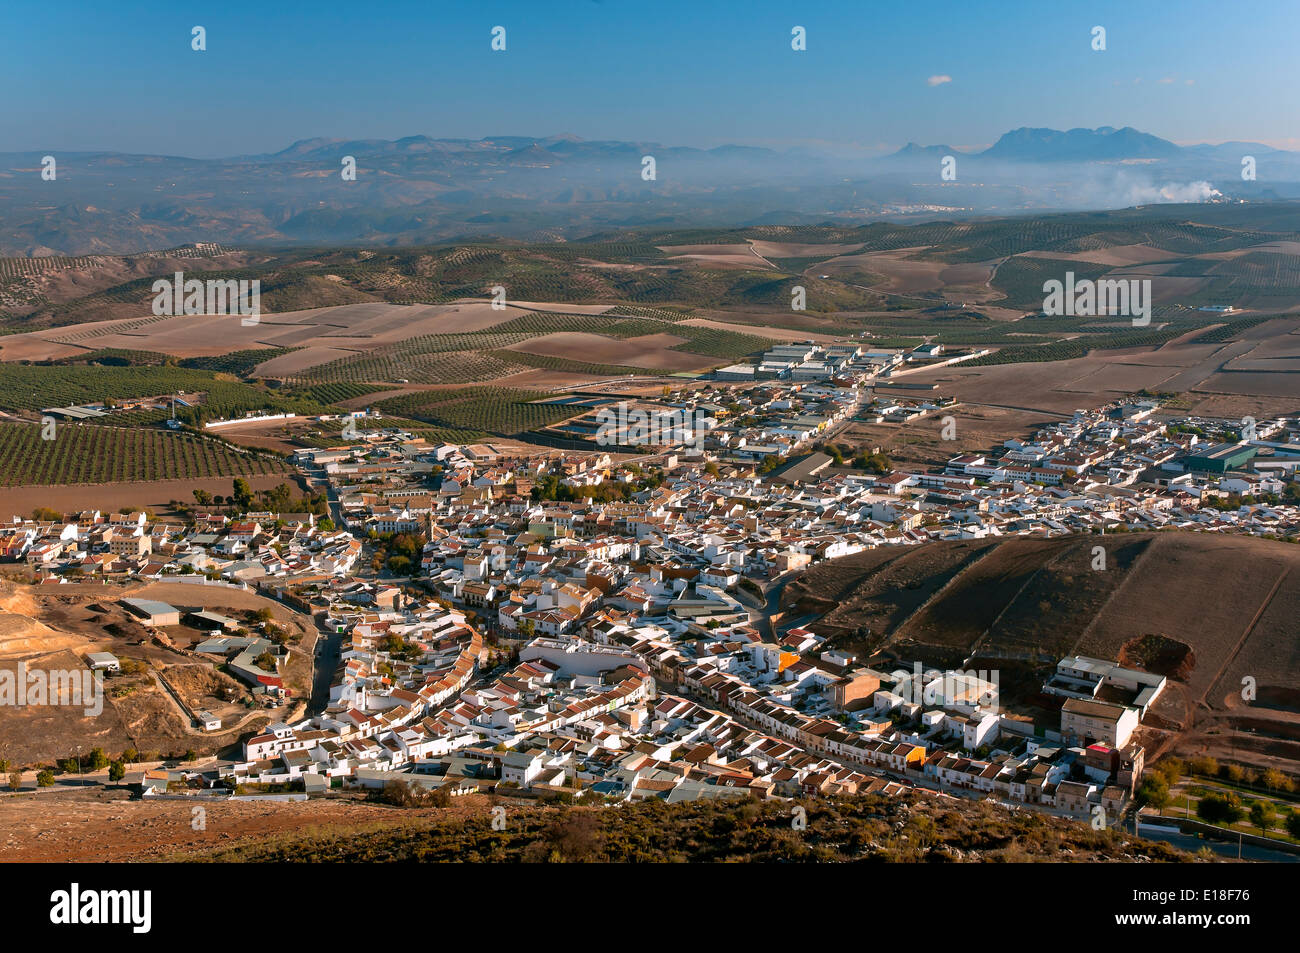 Vista panoramica, città sul percorso turistico dei banditi, Alameda, provincia di Malaga, regione dell'Andalusia, Spagna, Europa Foto Stock